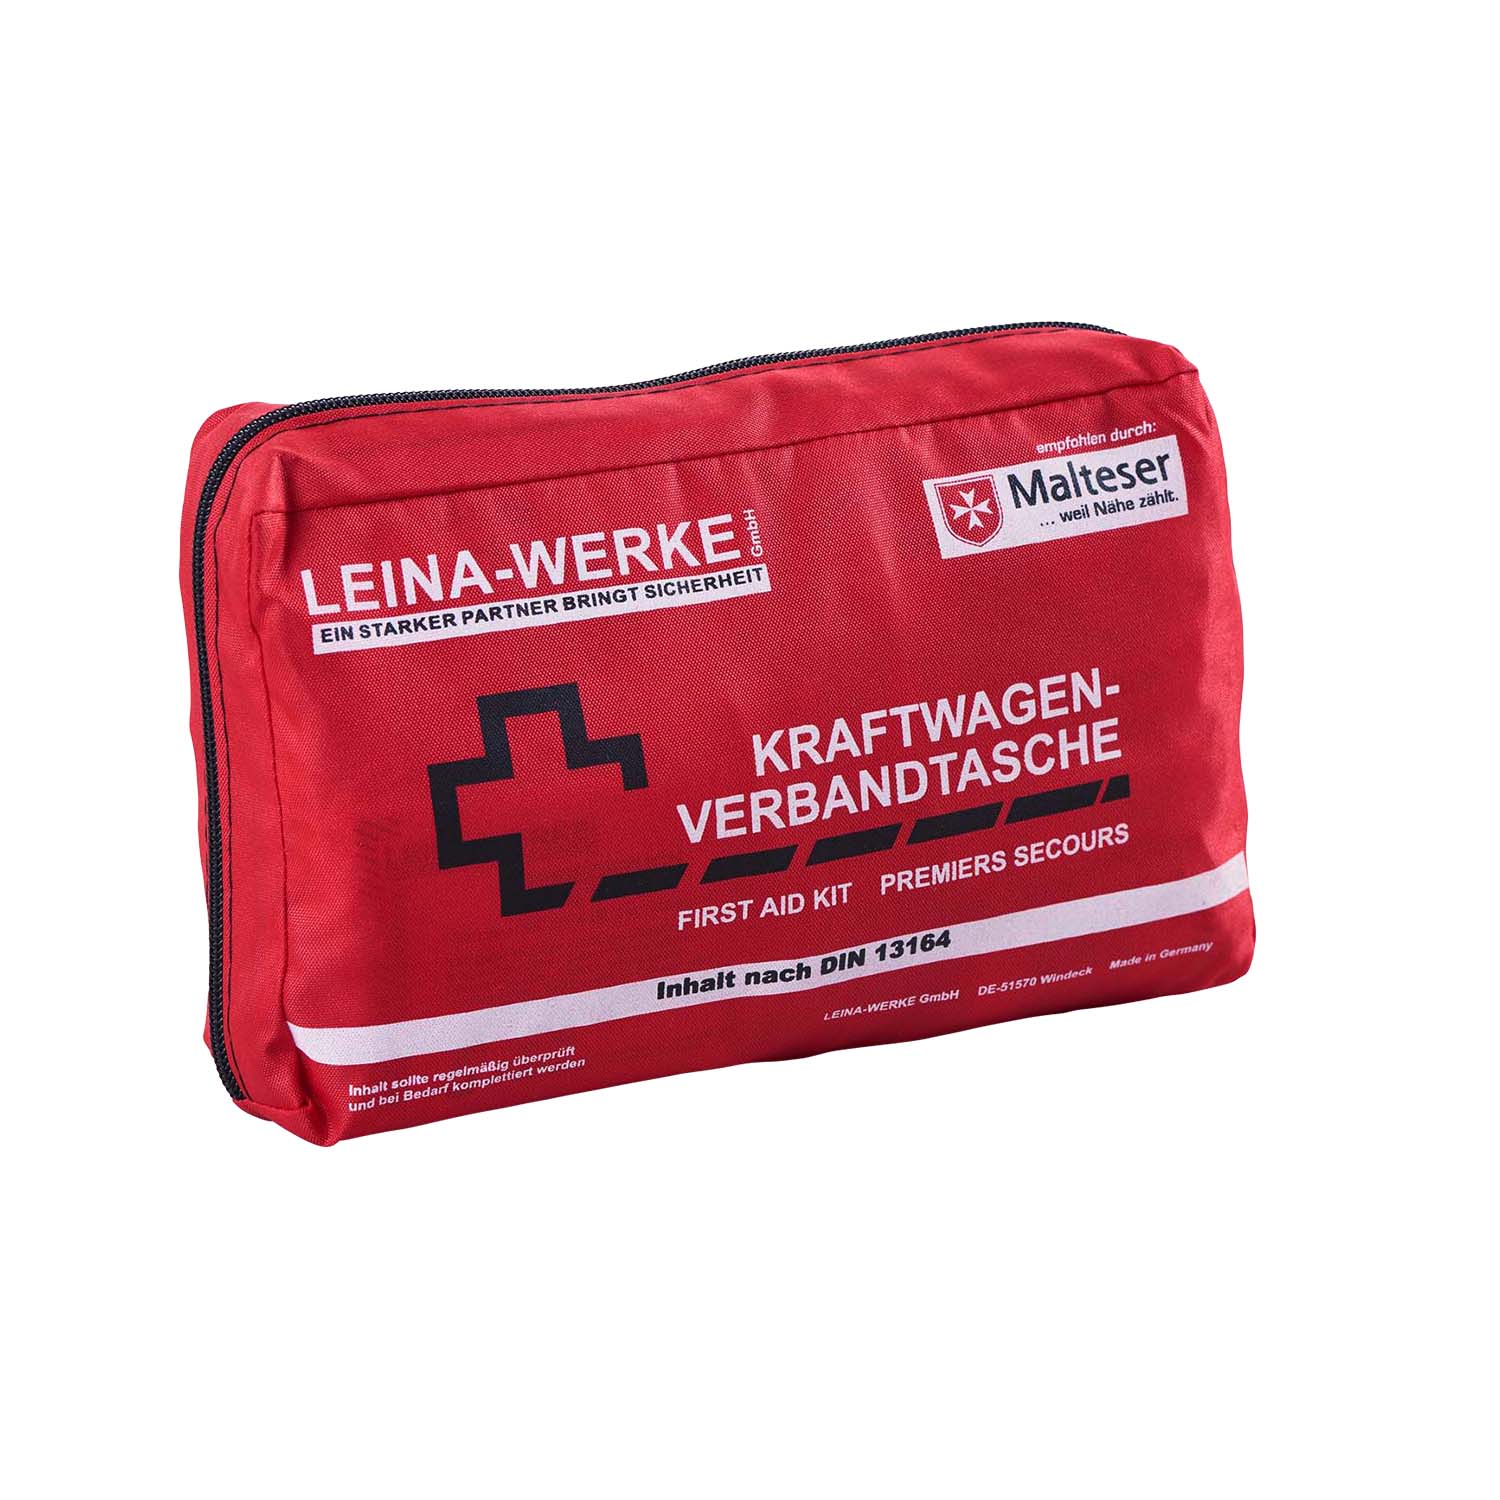 KFZ-Verbandtasche, Erste-Hilfe-Tasche